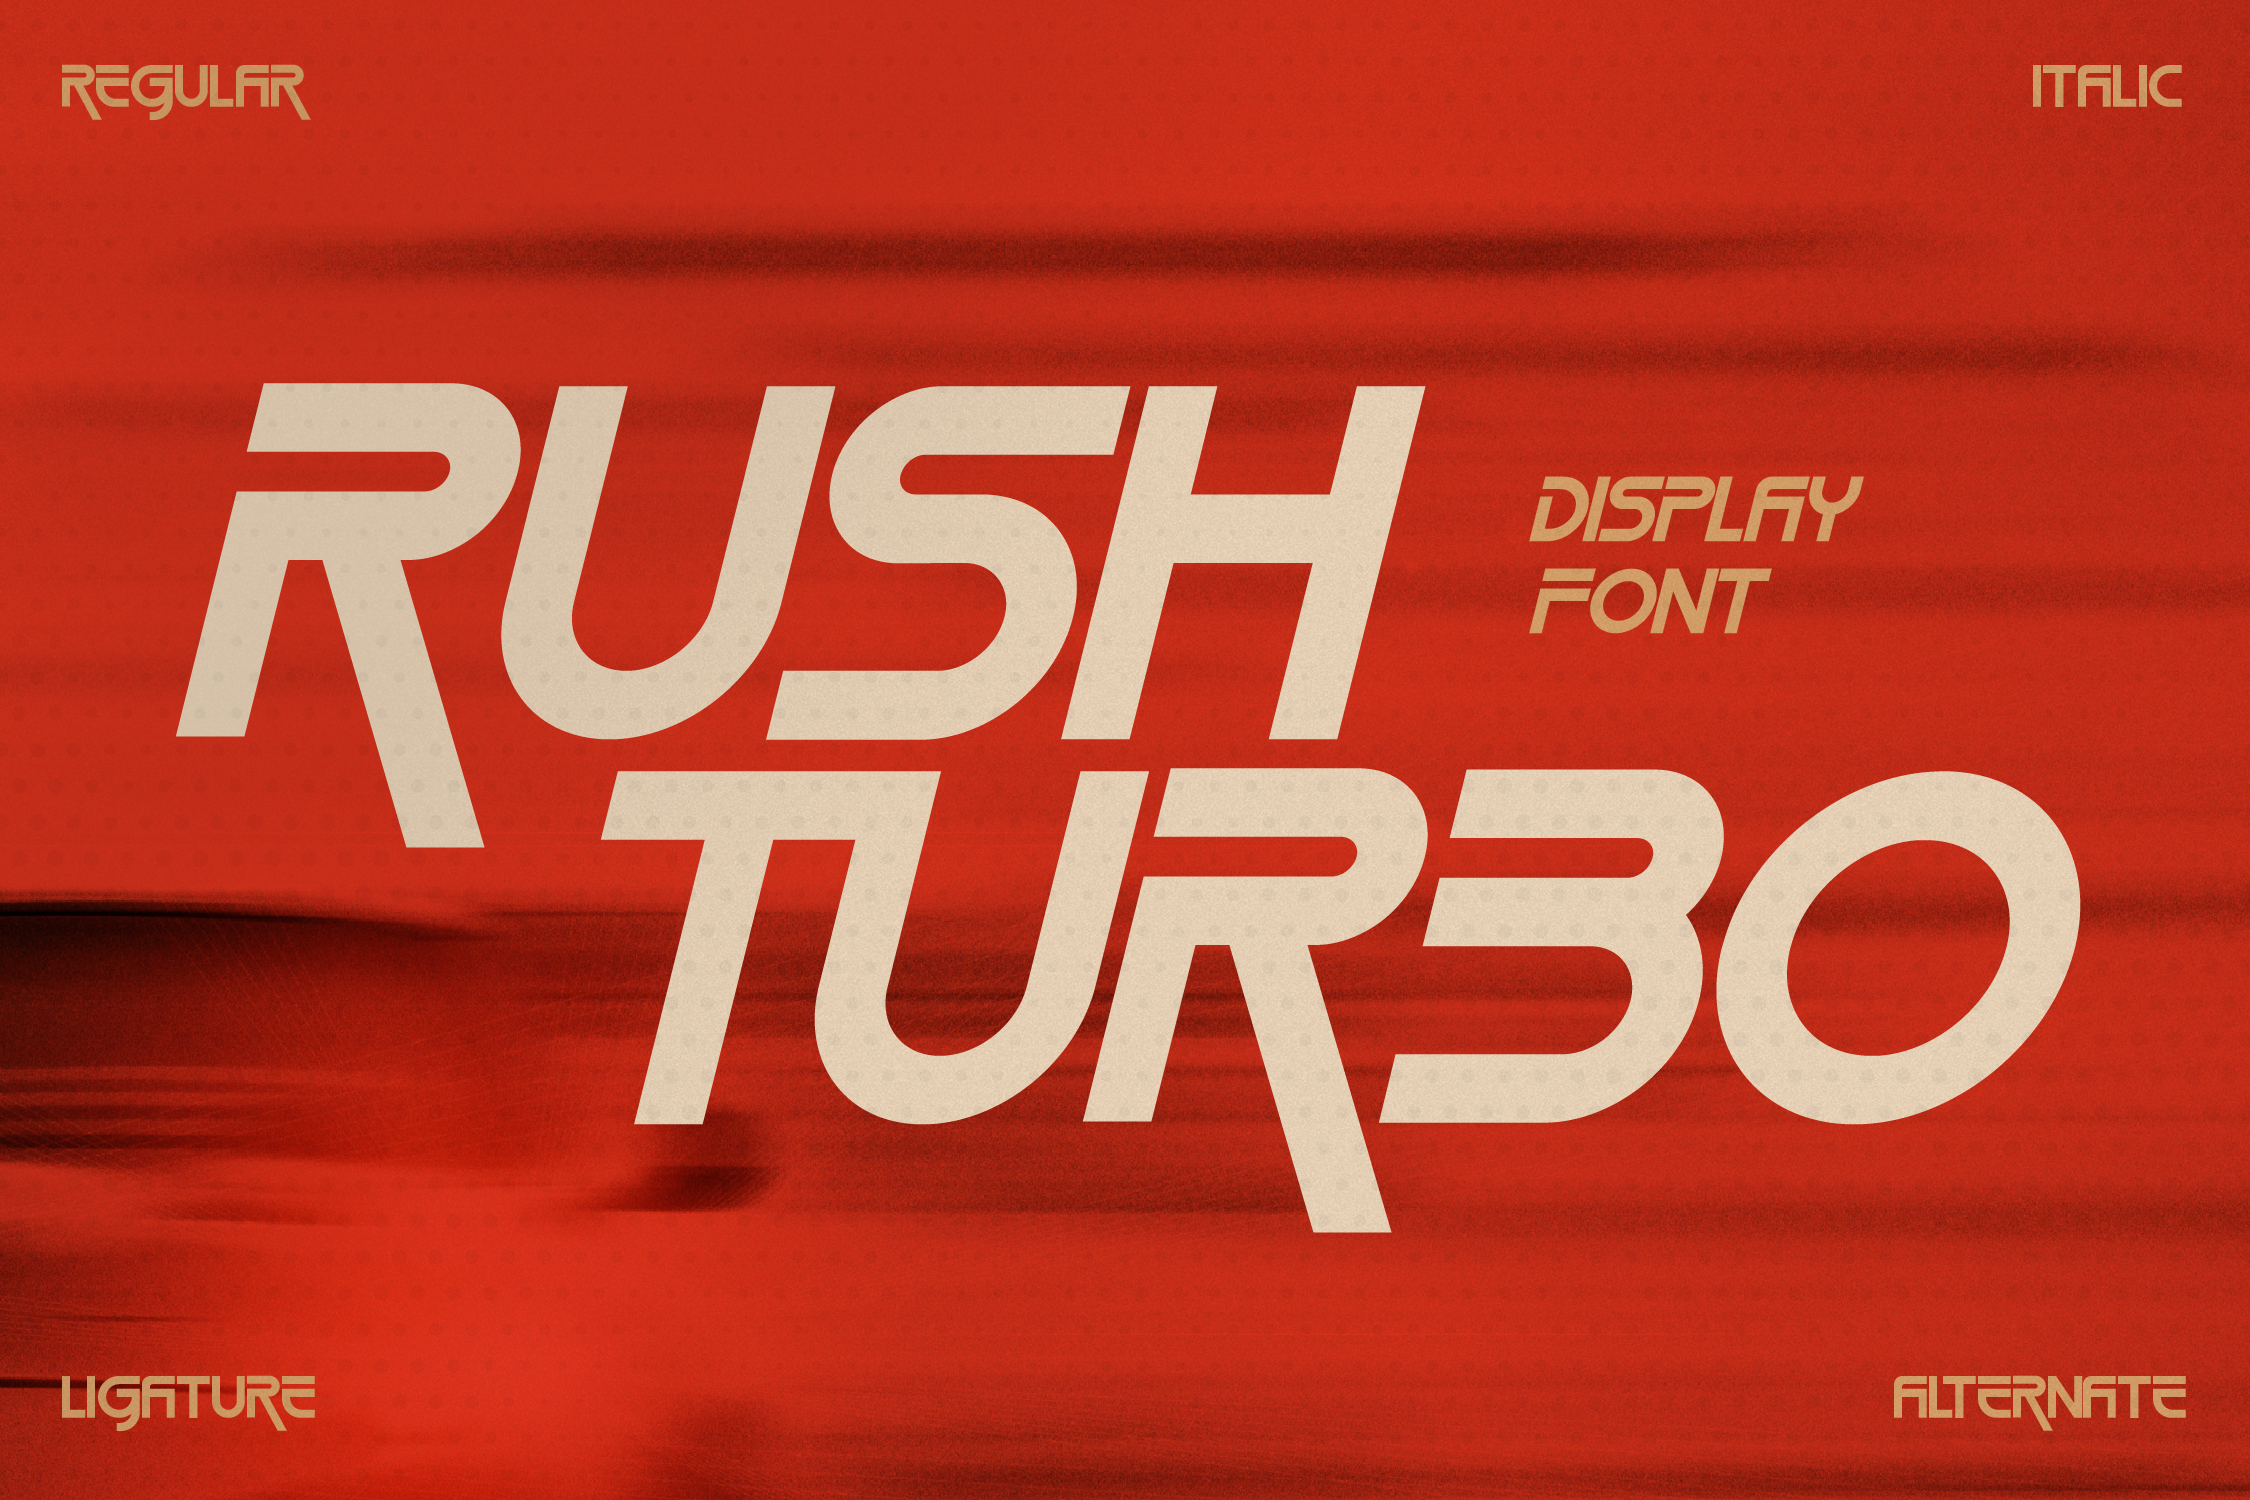 Ejemplo de fuente Rush Turbo